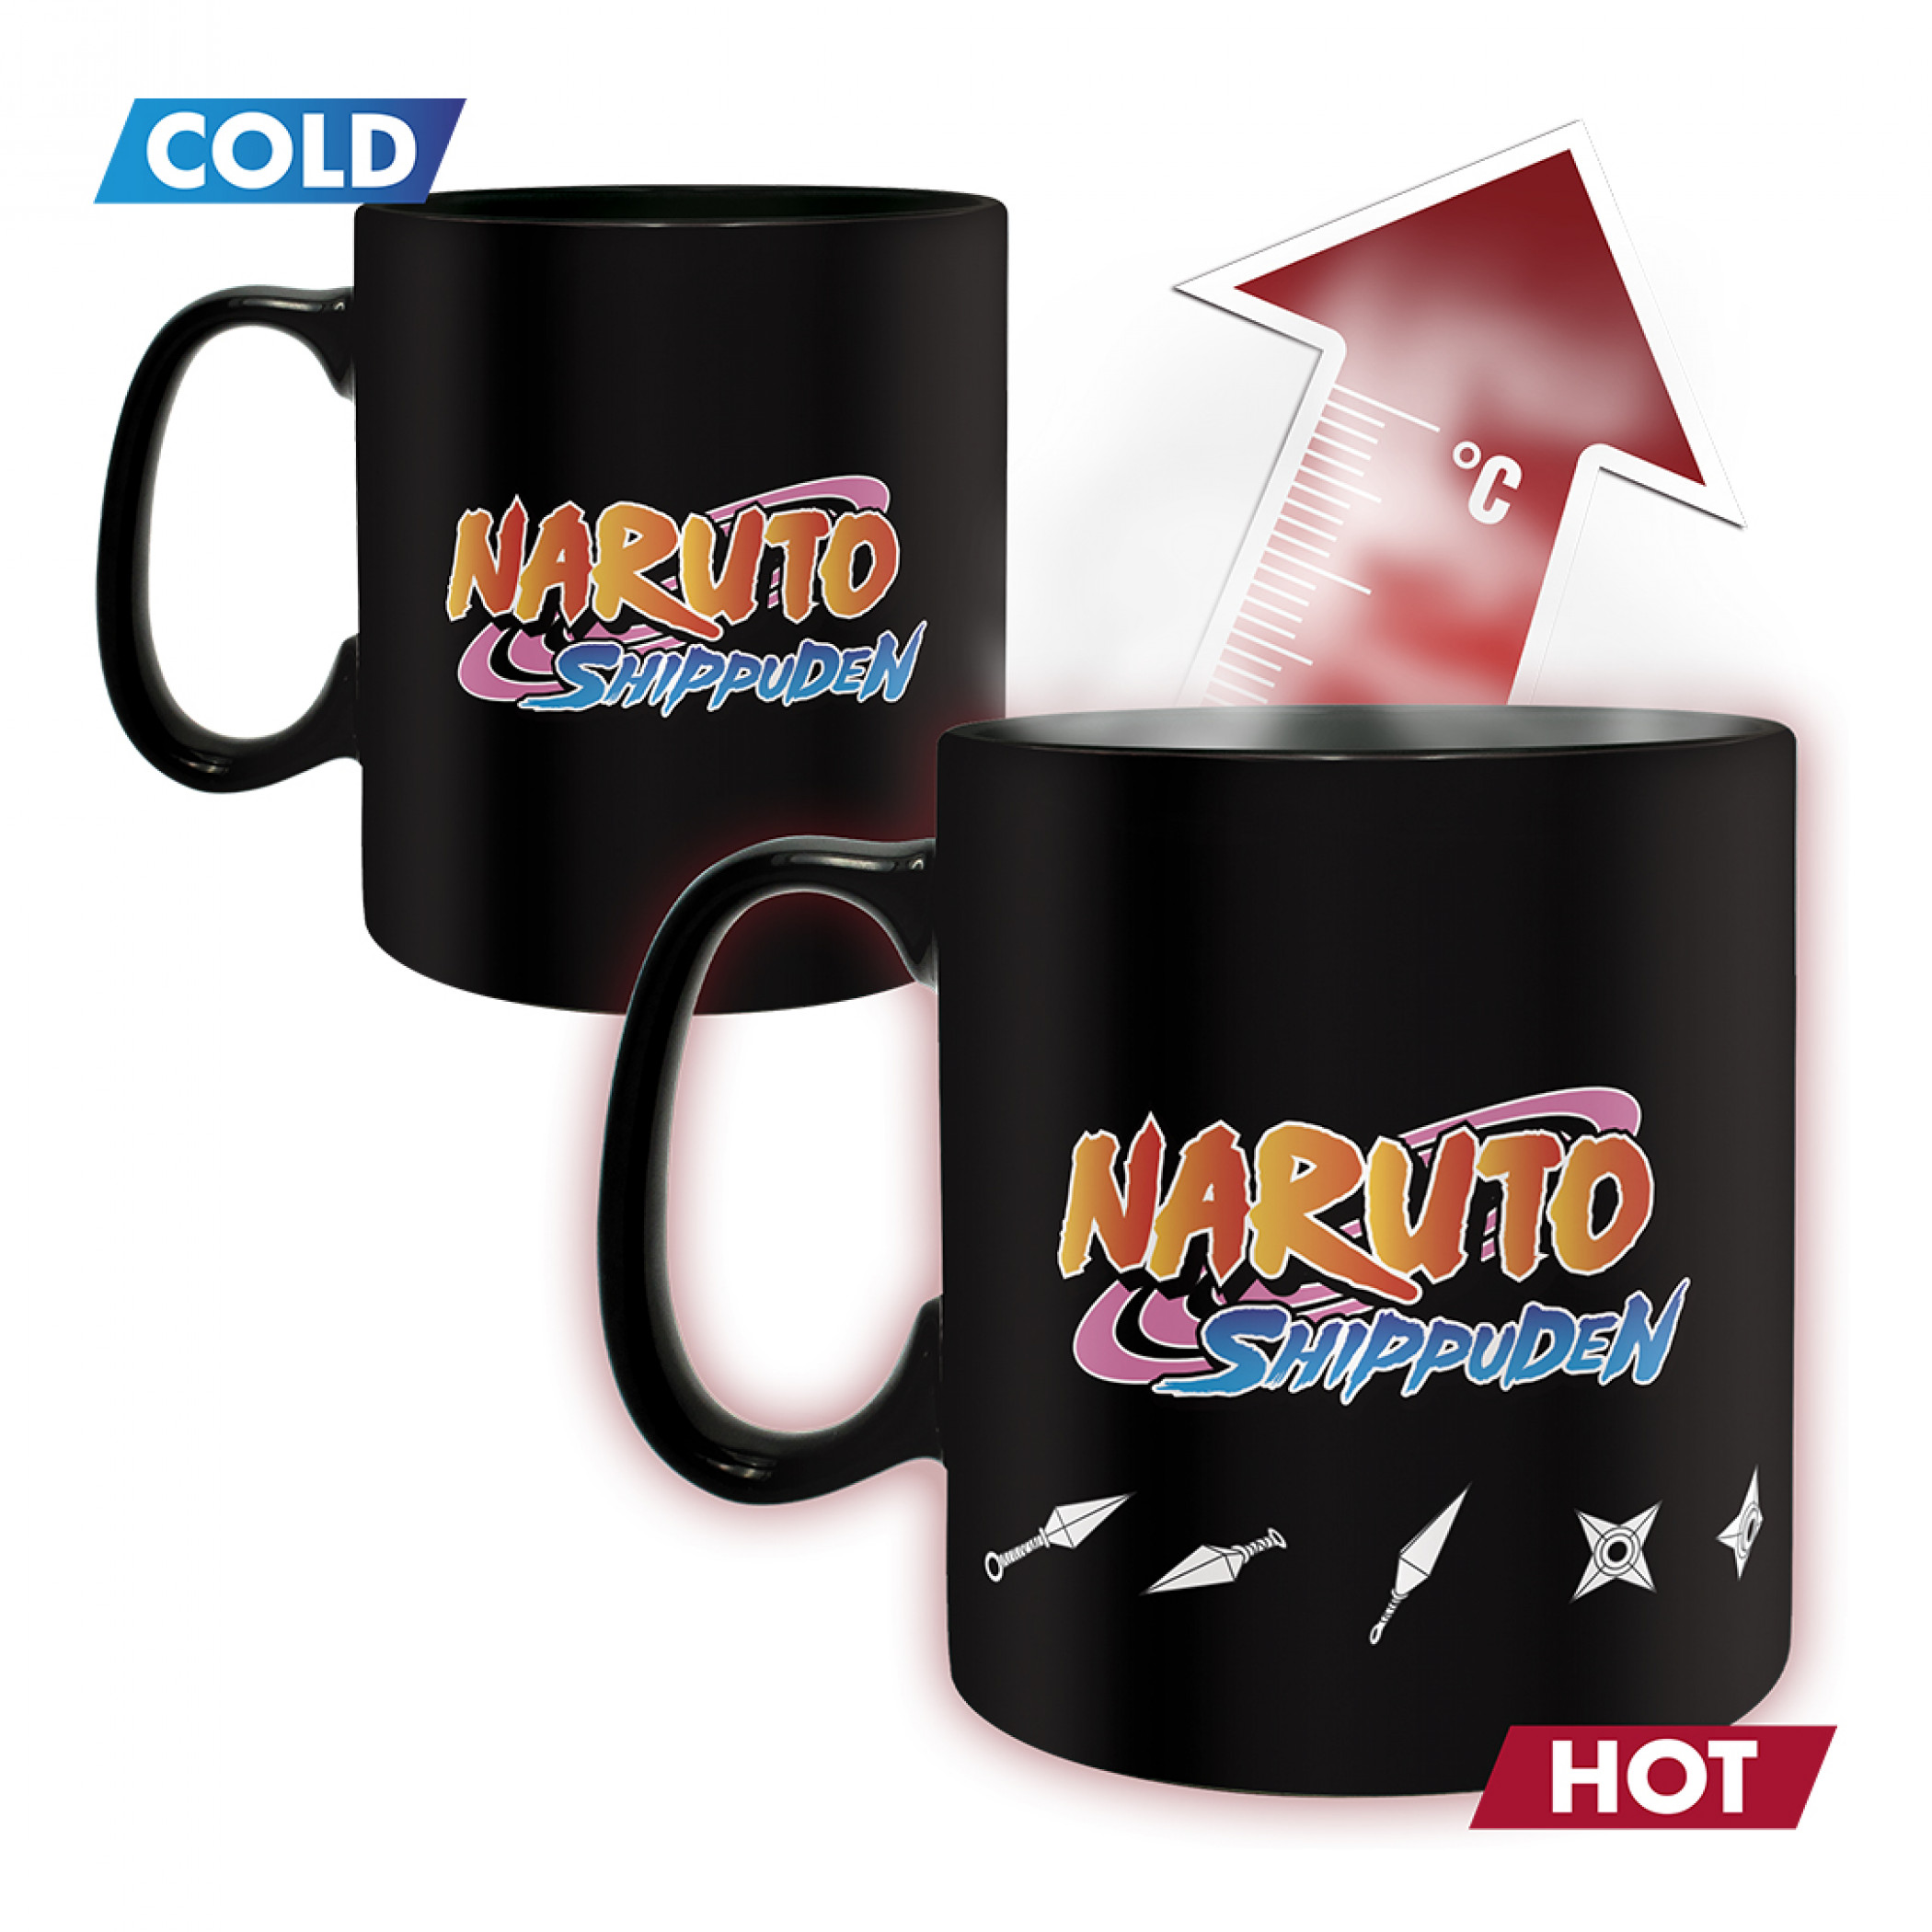 Naruto Shippuden Bunshin No Jutsu 16oz Magic Ceramic Mug & Coaster Set